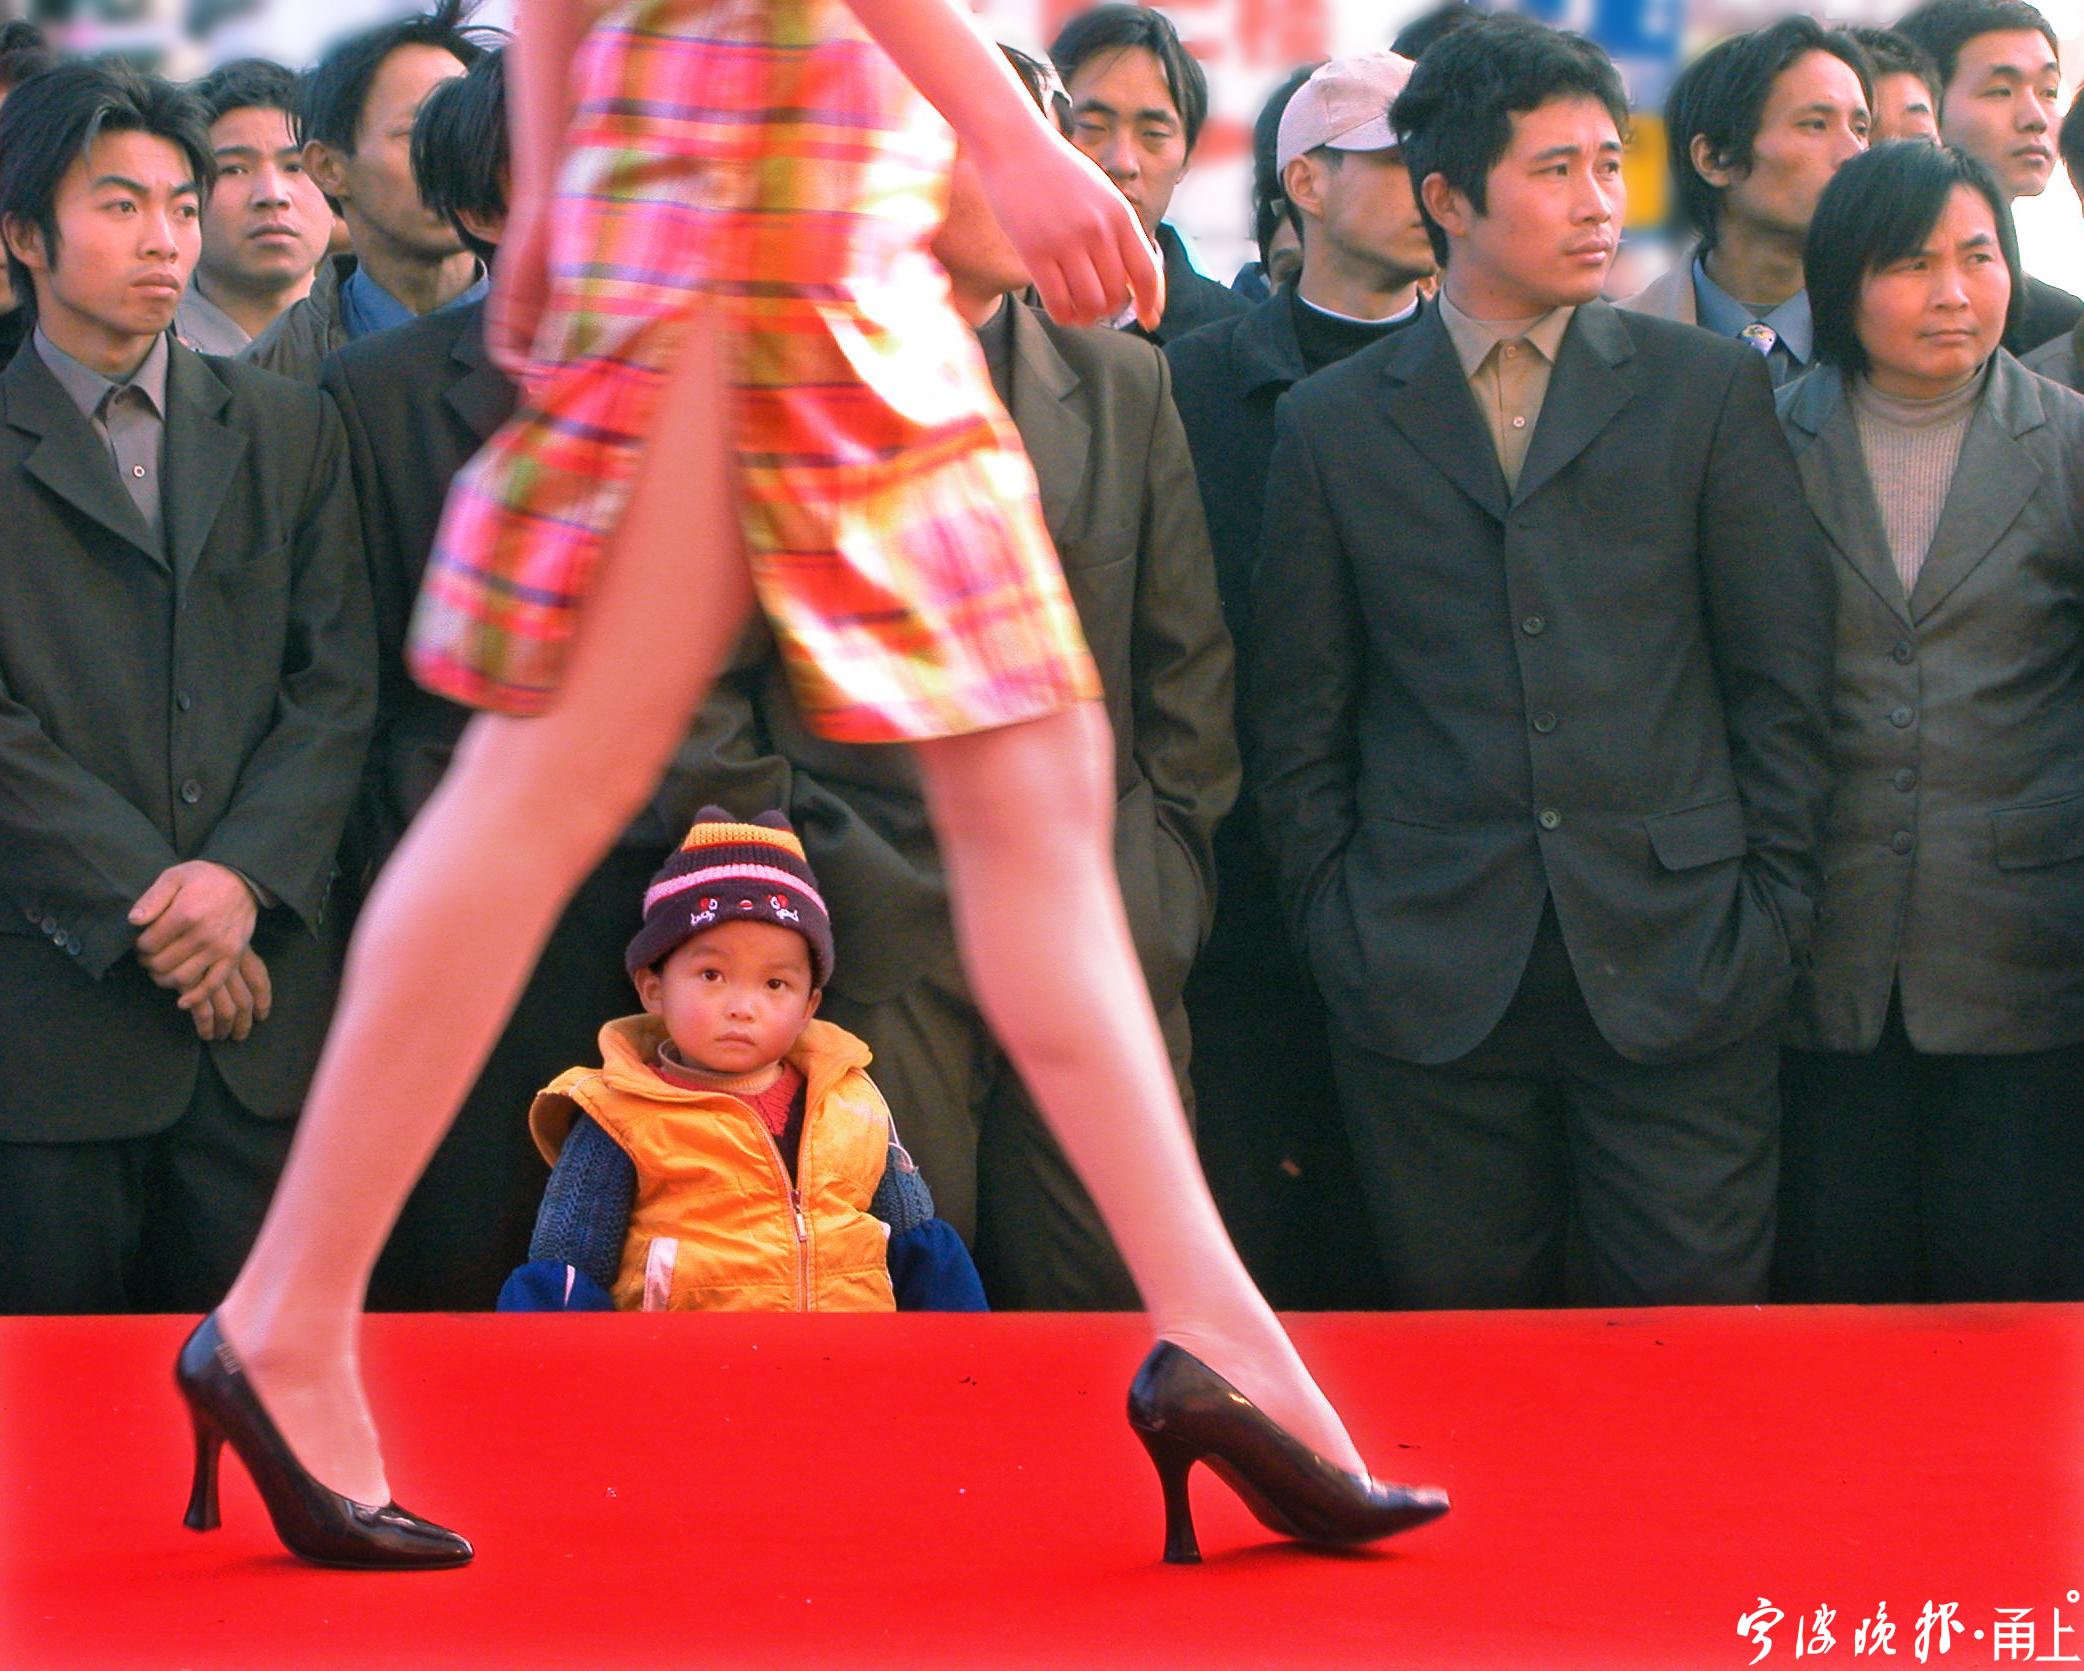 (2003年)中山路 街头的时装表演吸引了孩子的兴趣